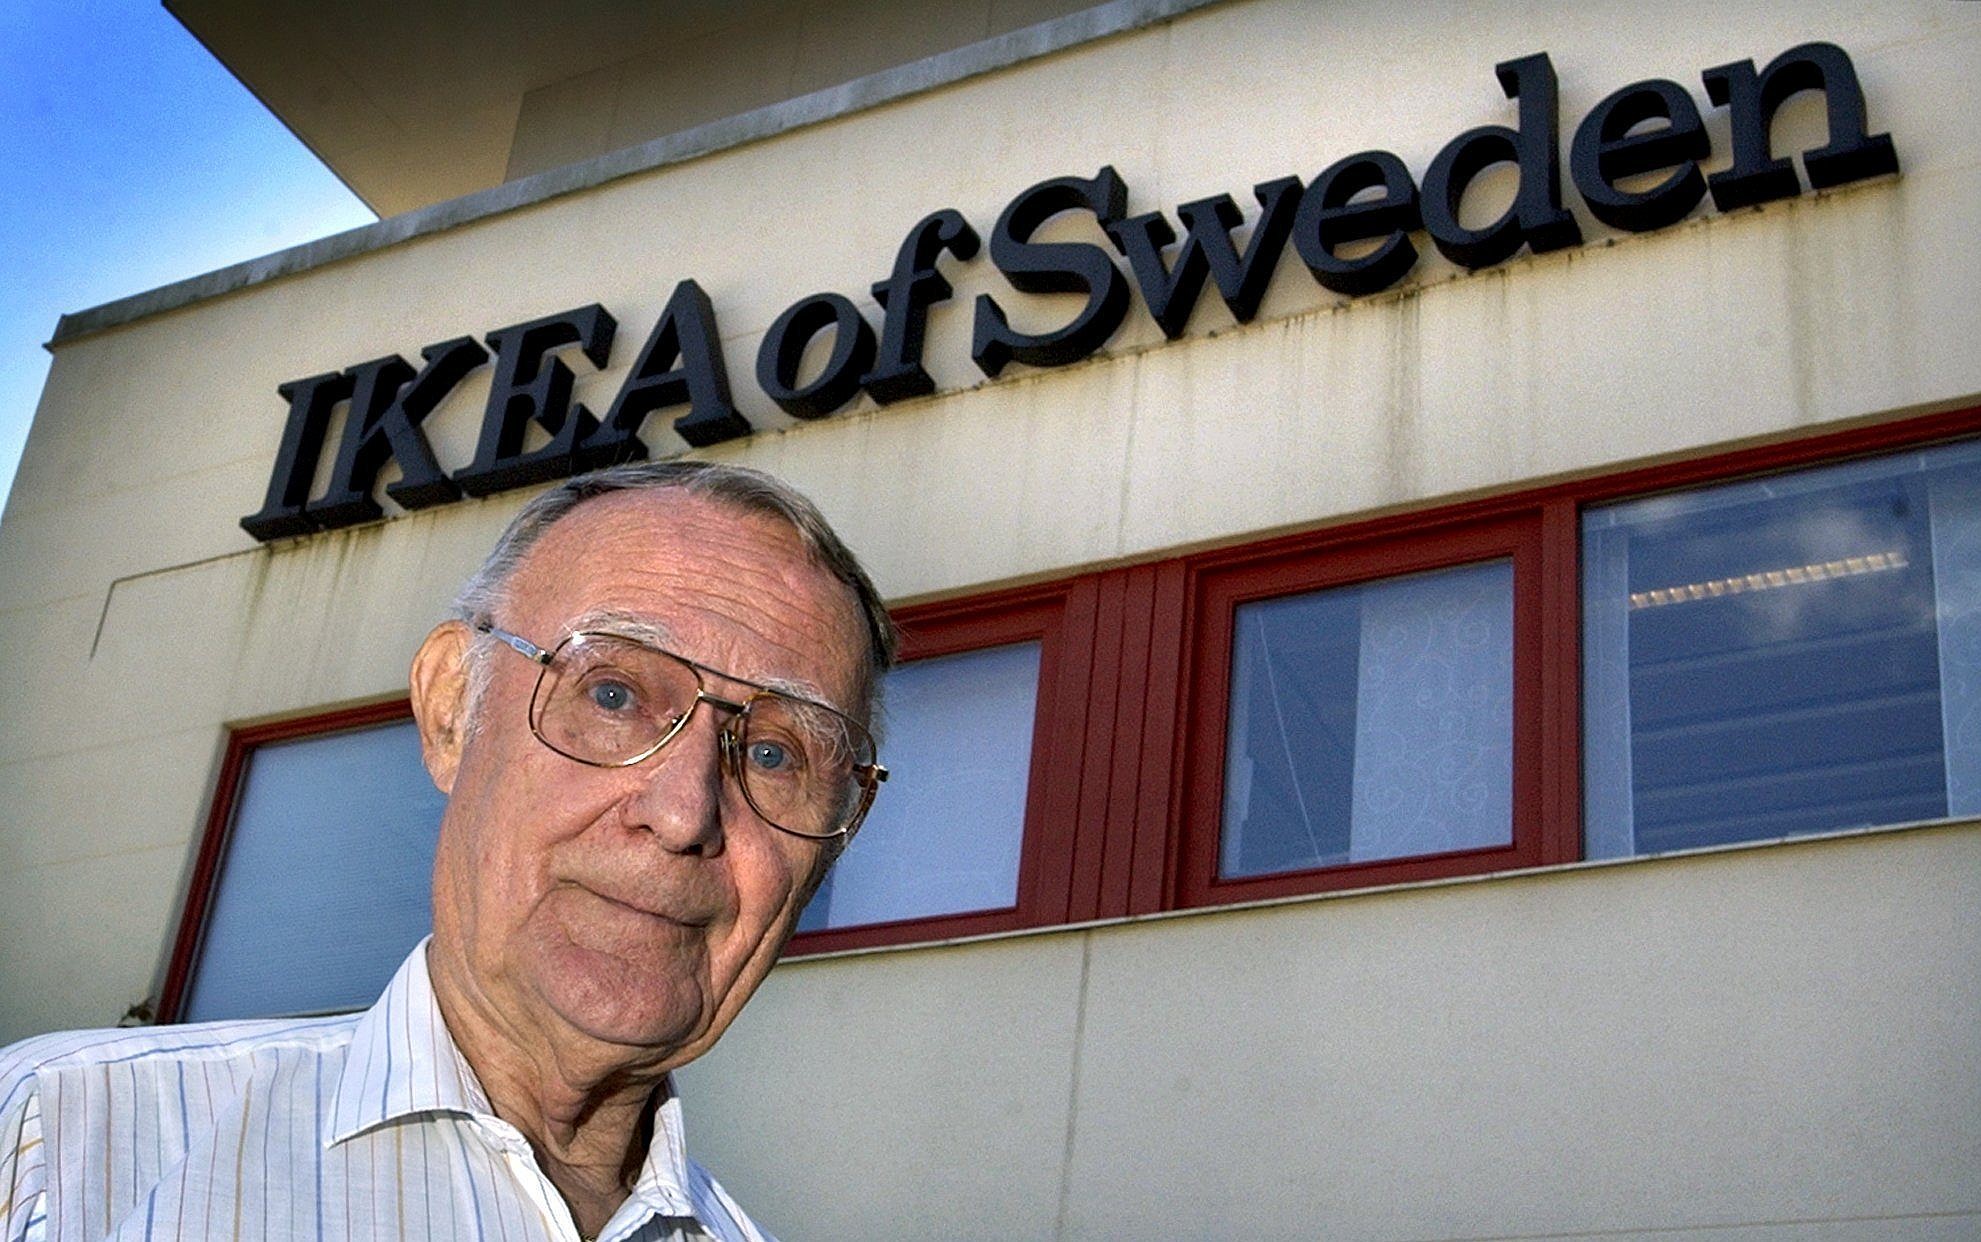 IKEA founder Ingvar Kamprad dies at 91 | The Times of Israel